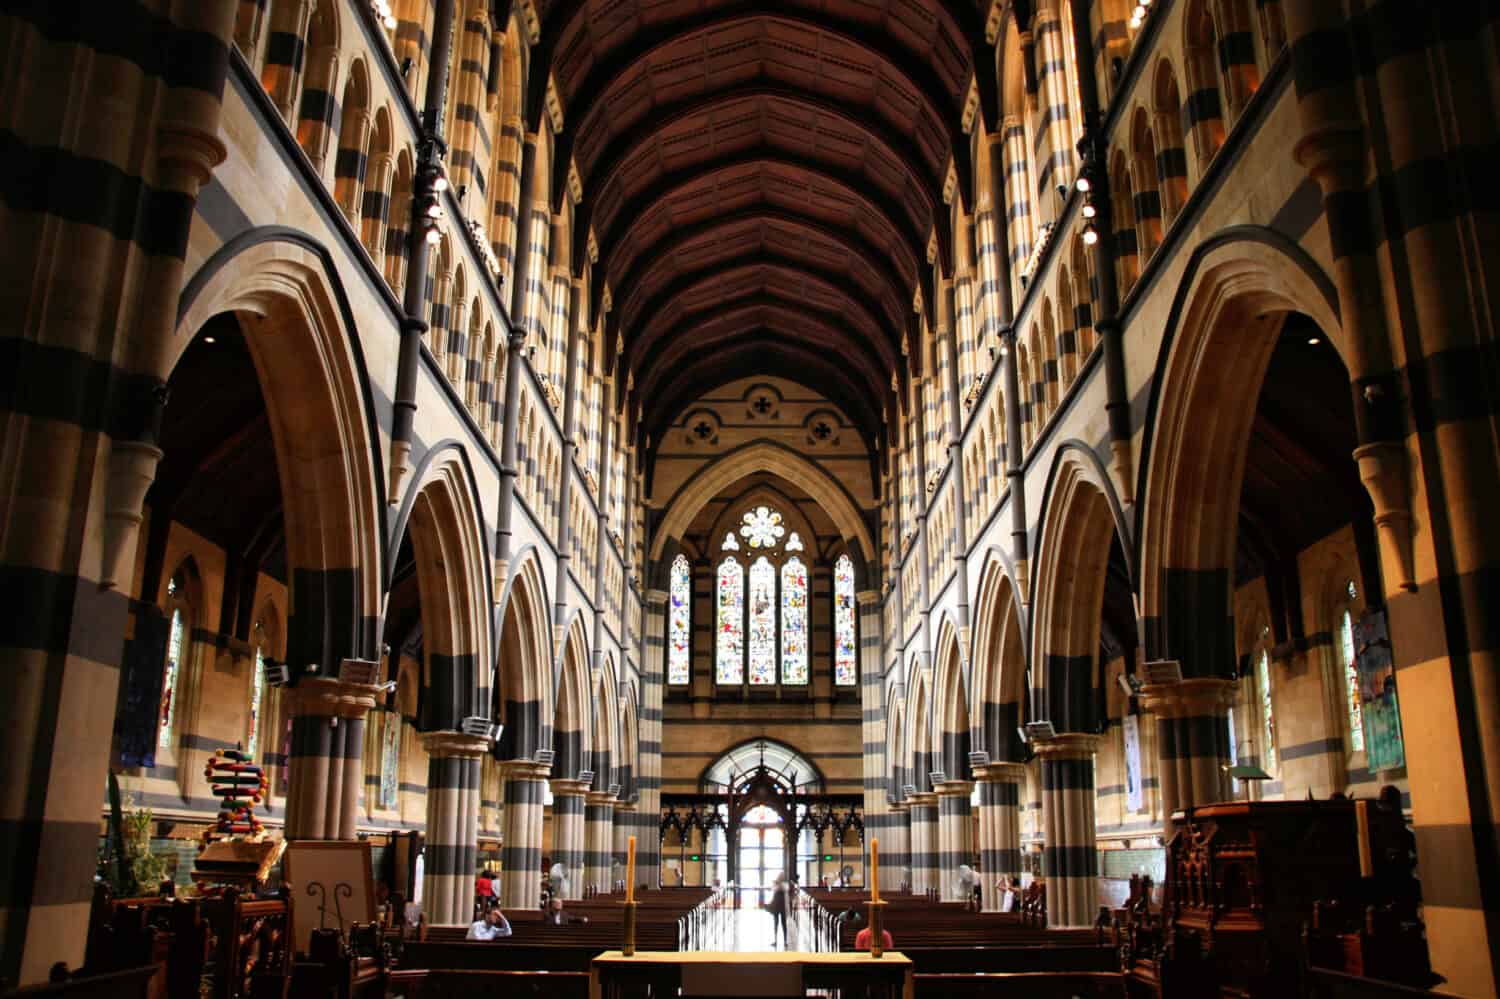 St. Paul's Anglican Cathedral interior in Melbourne, Victoria, Australia